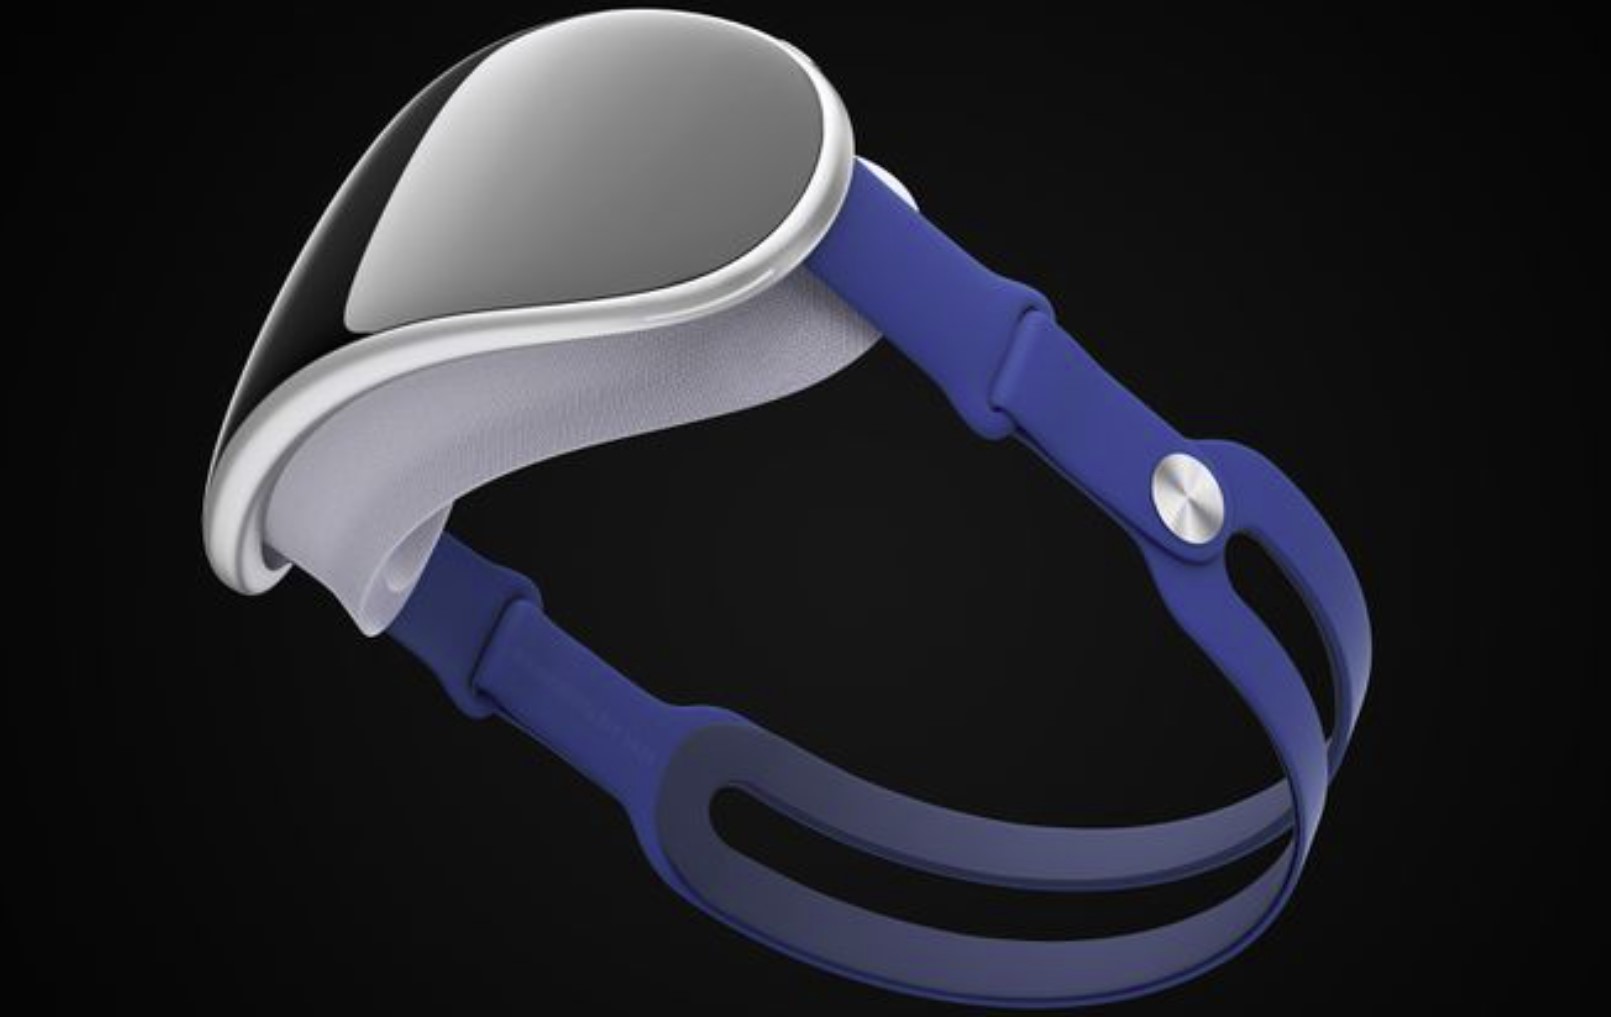 Marchio "realityOS" registrato da Apple, suggerimenti sul lancio imminente del visore AR/VR